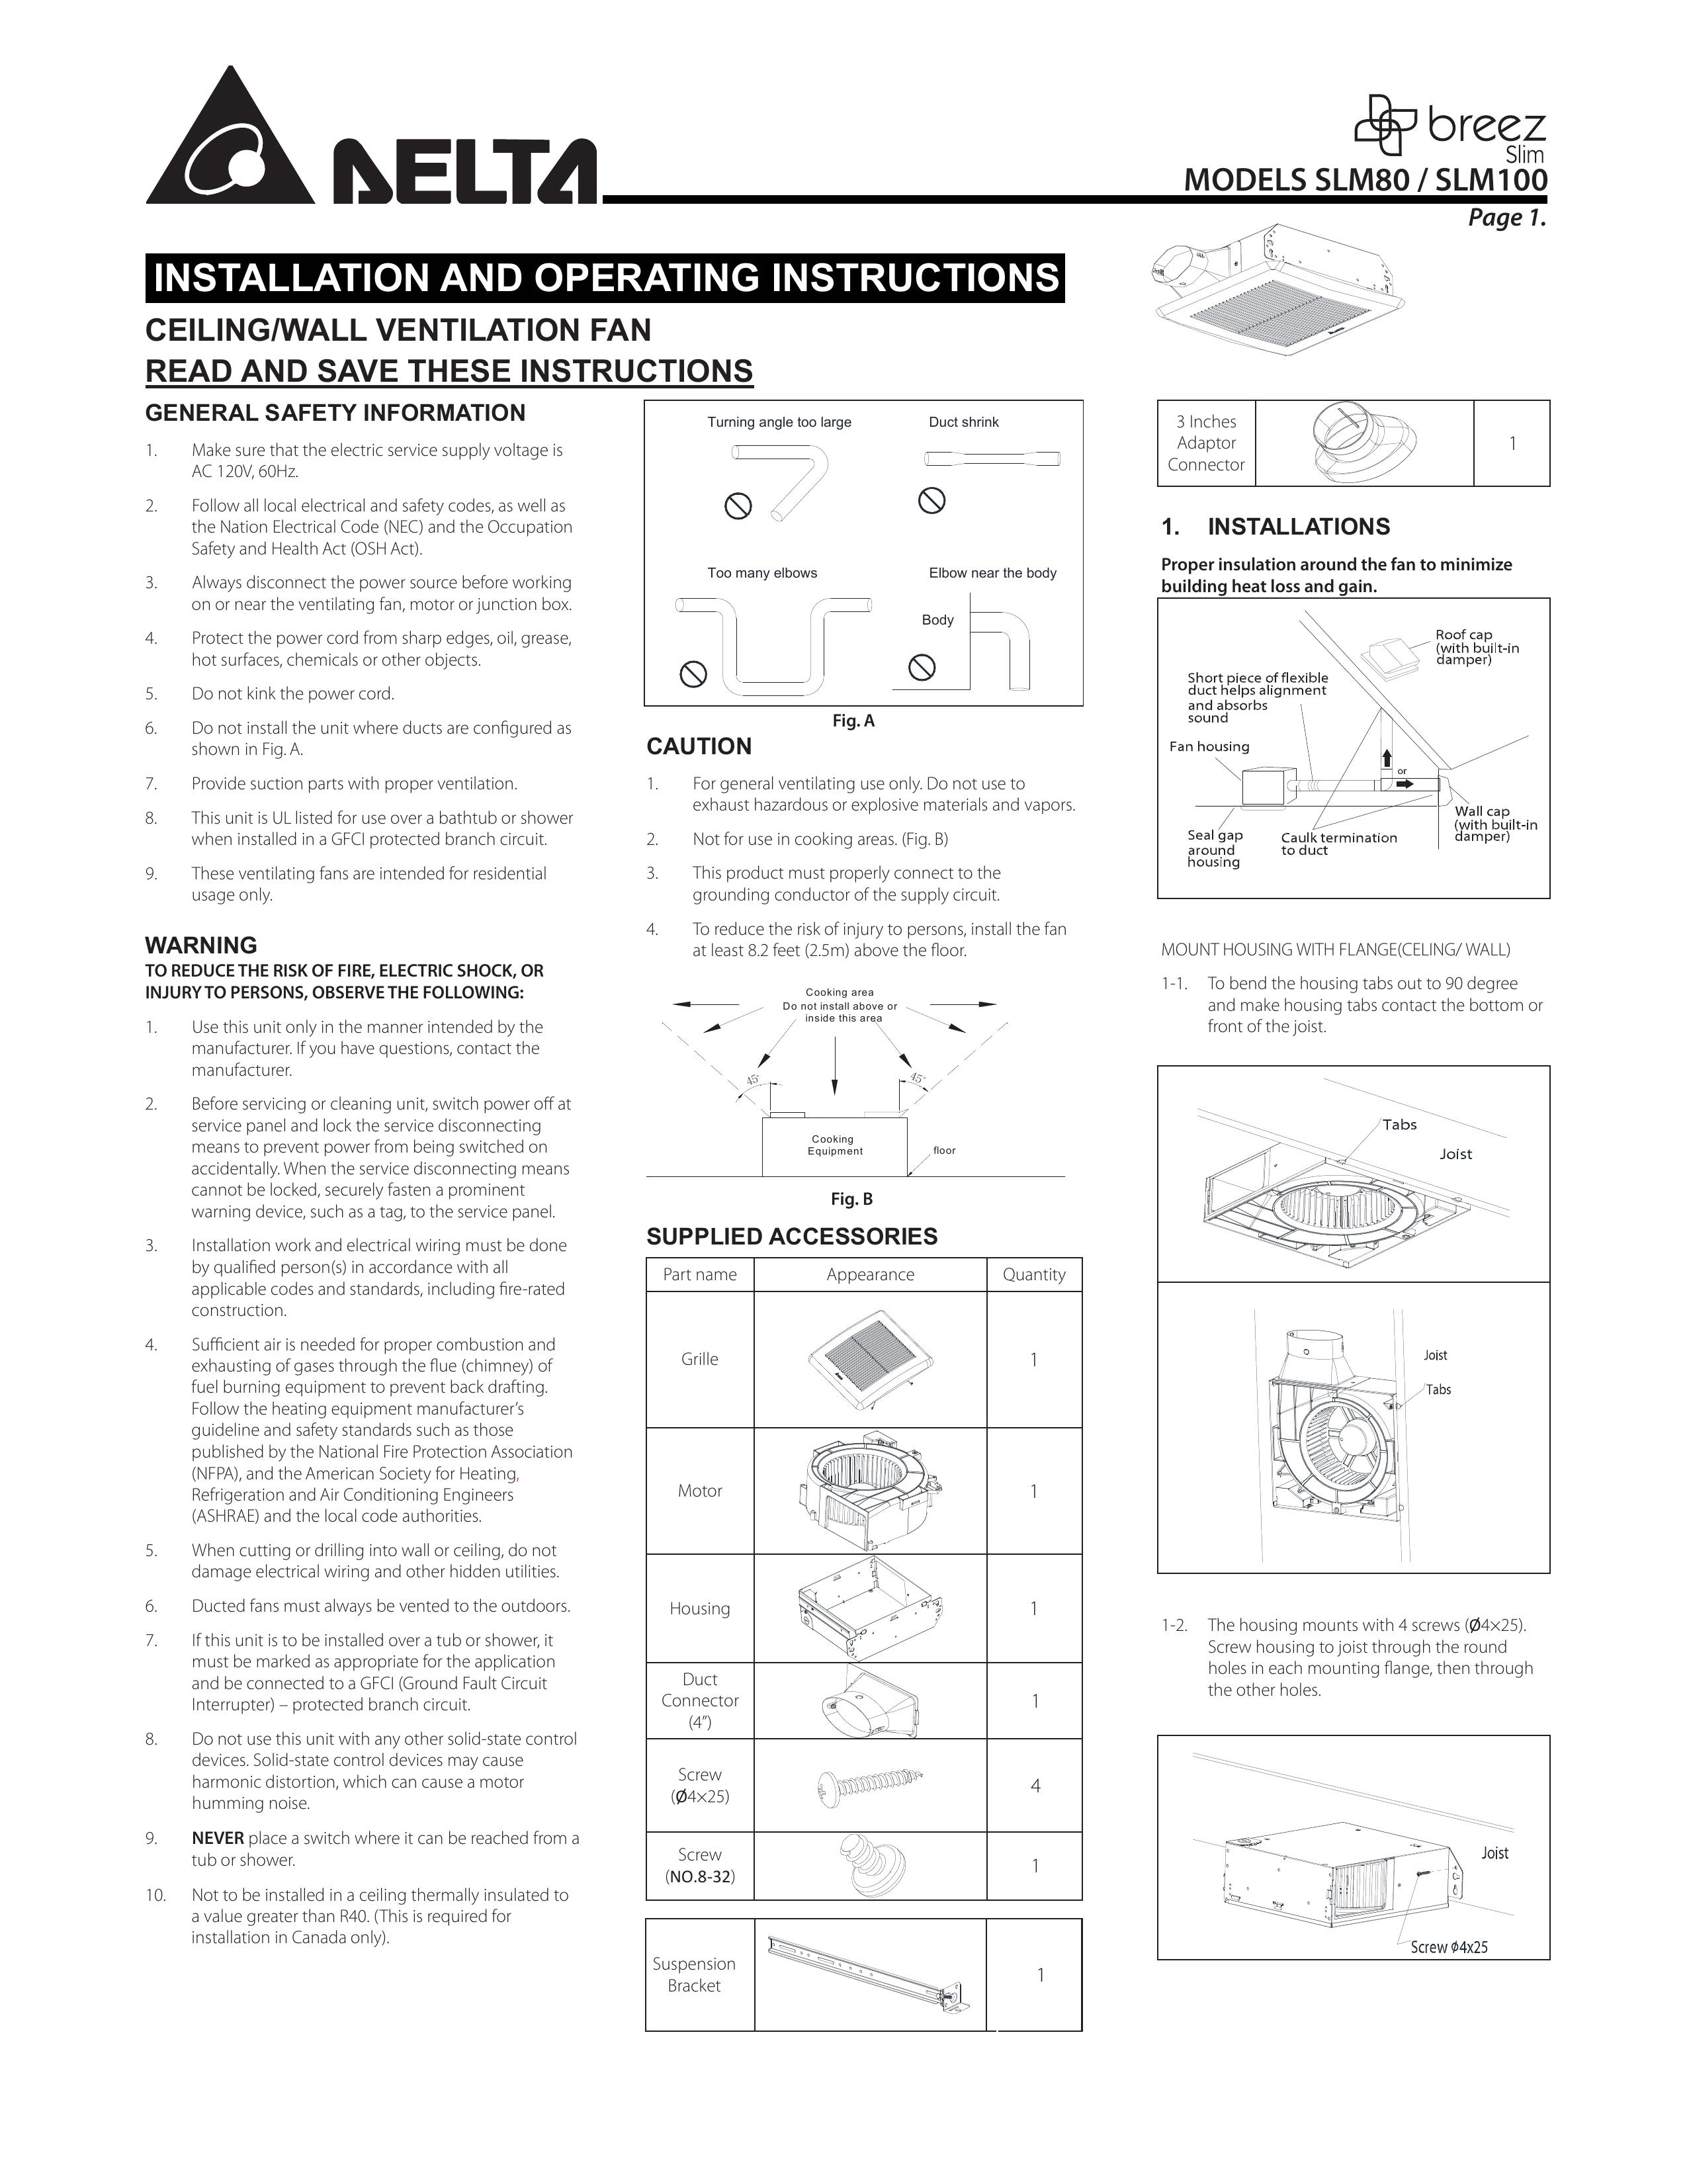 Delta SLM100 Outdoor Ceiling Fan User Manual